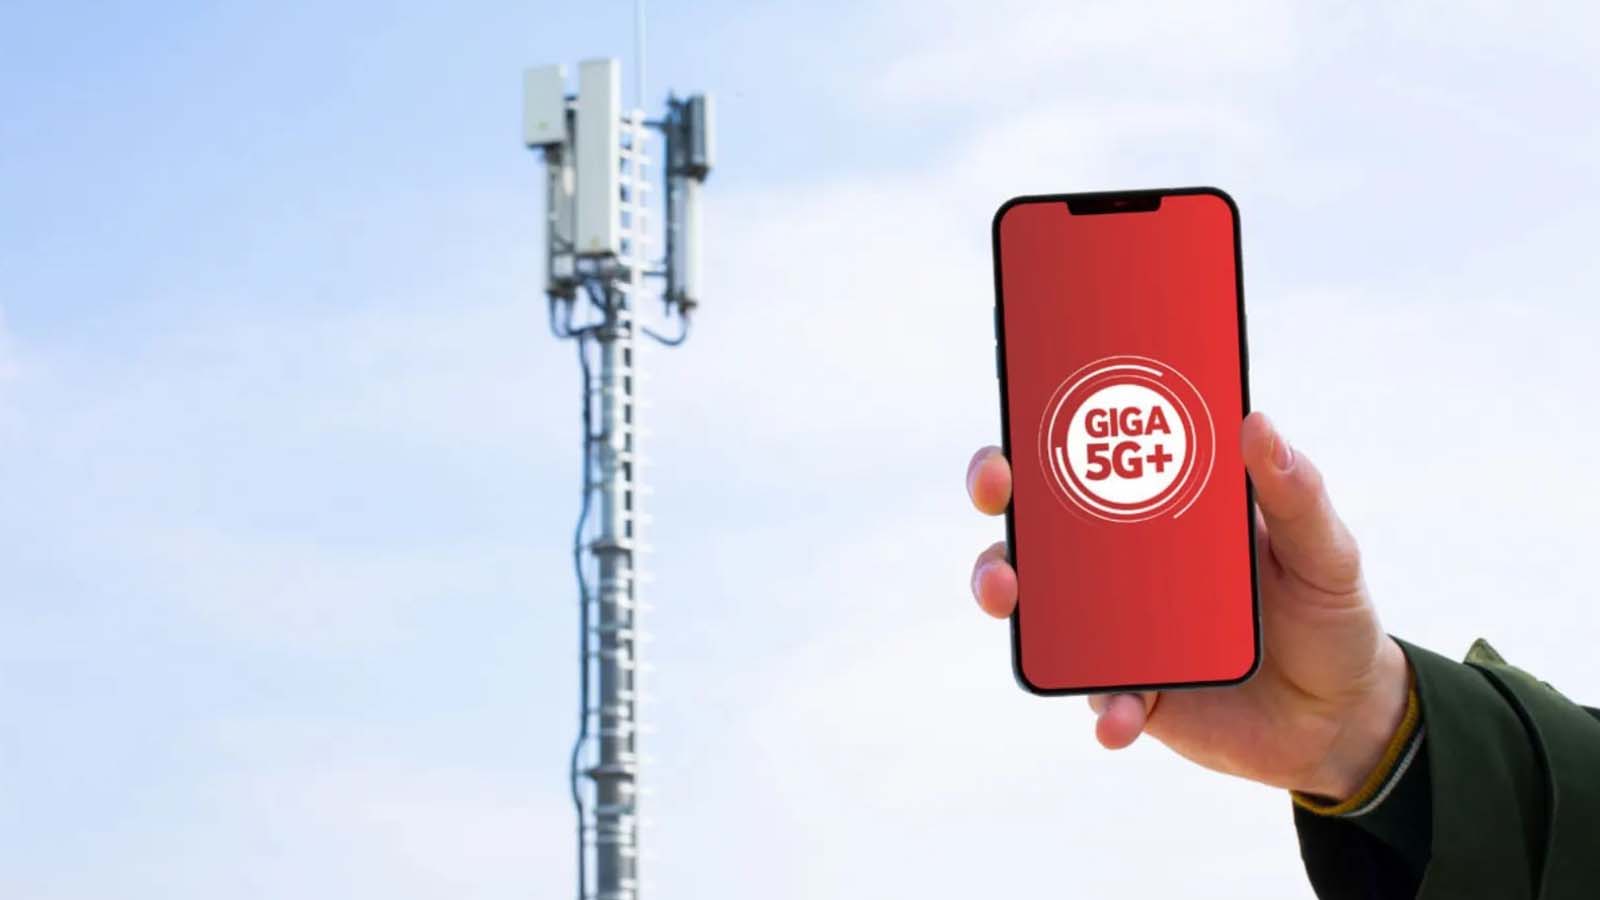 La leadership di Vodafone nel settore delle reti mobili in Italia attraverso i dati di Altroconsumo